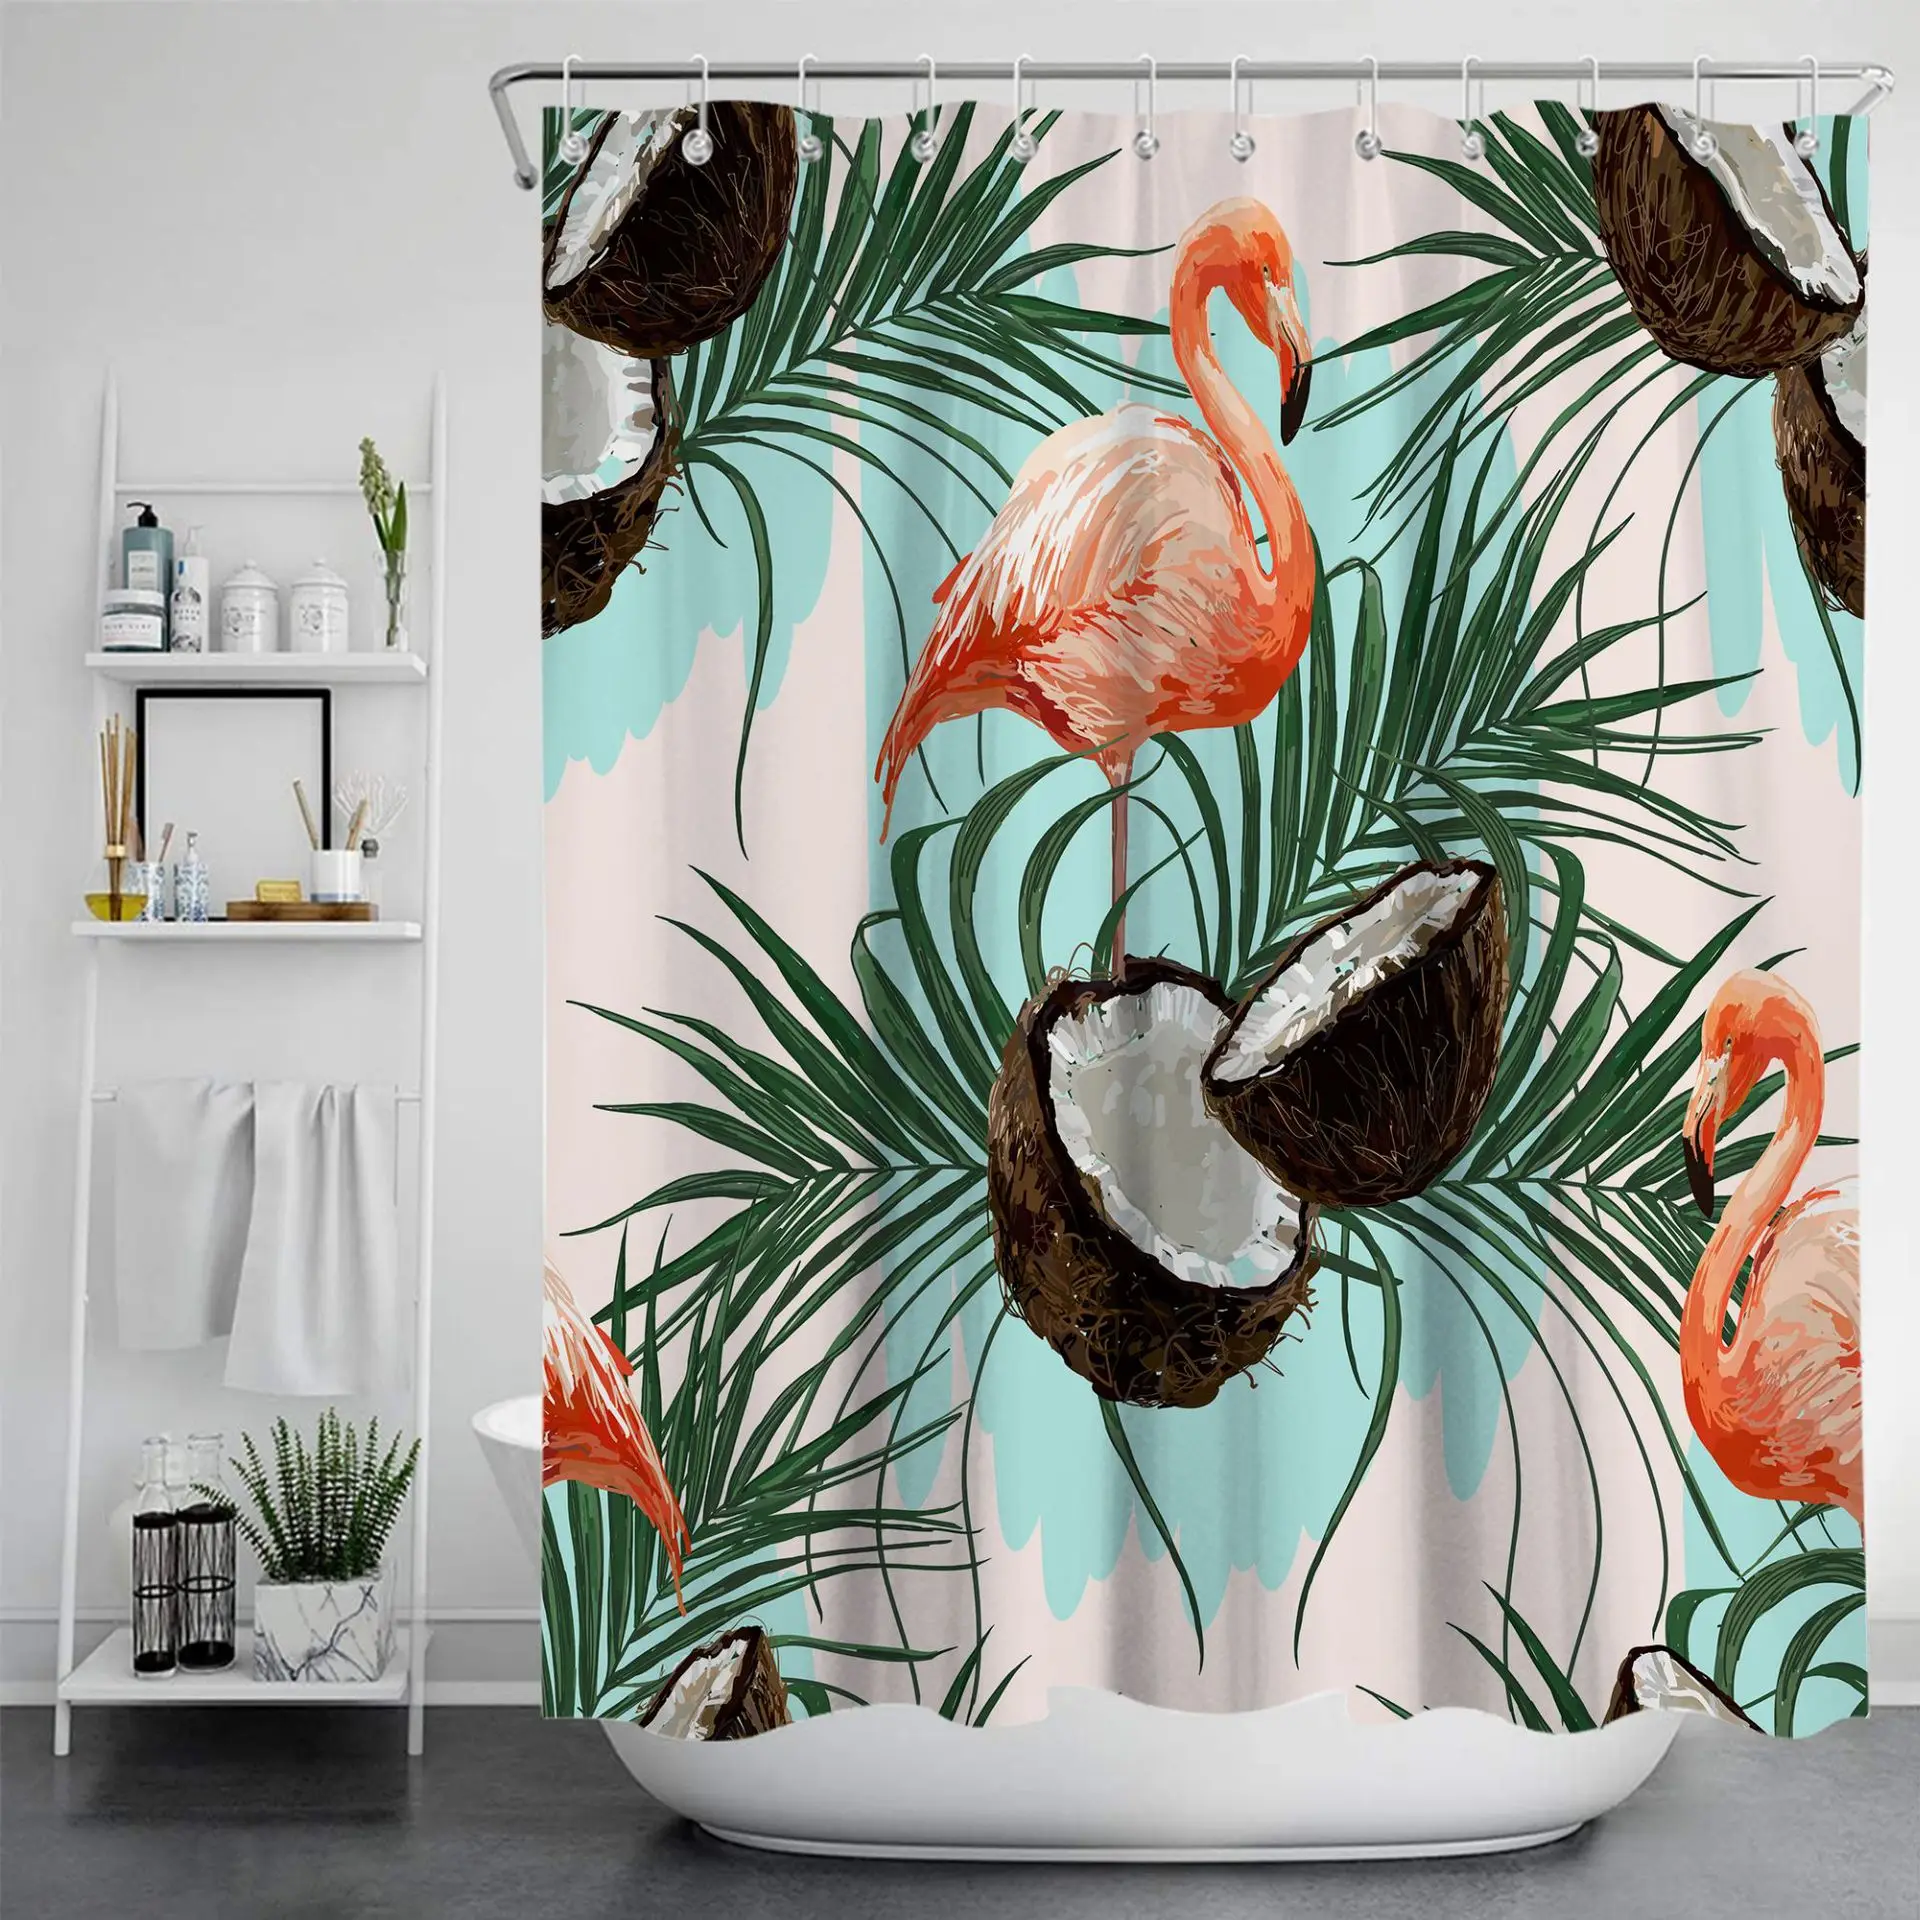 Duş Perdesi Polyester Su Geçirmez Banyo Flamingo ve Çiçek Banyo Bölme Perde Duş Su Geçirmez Perde